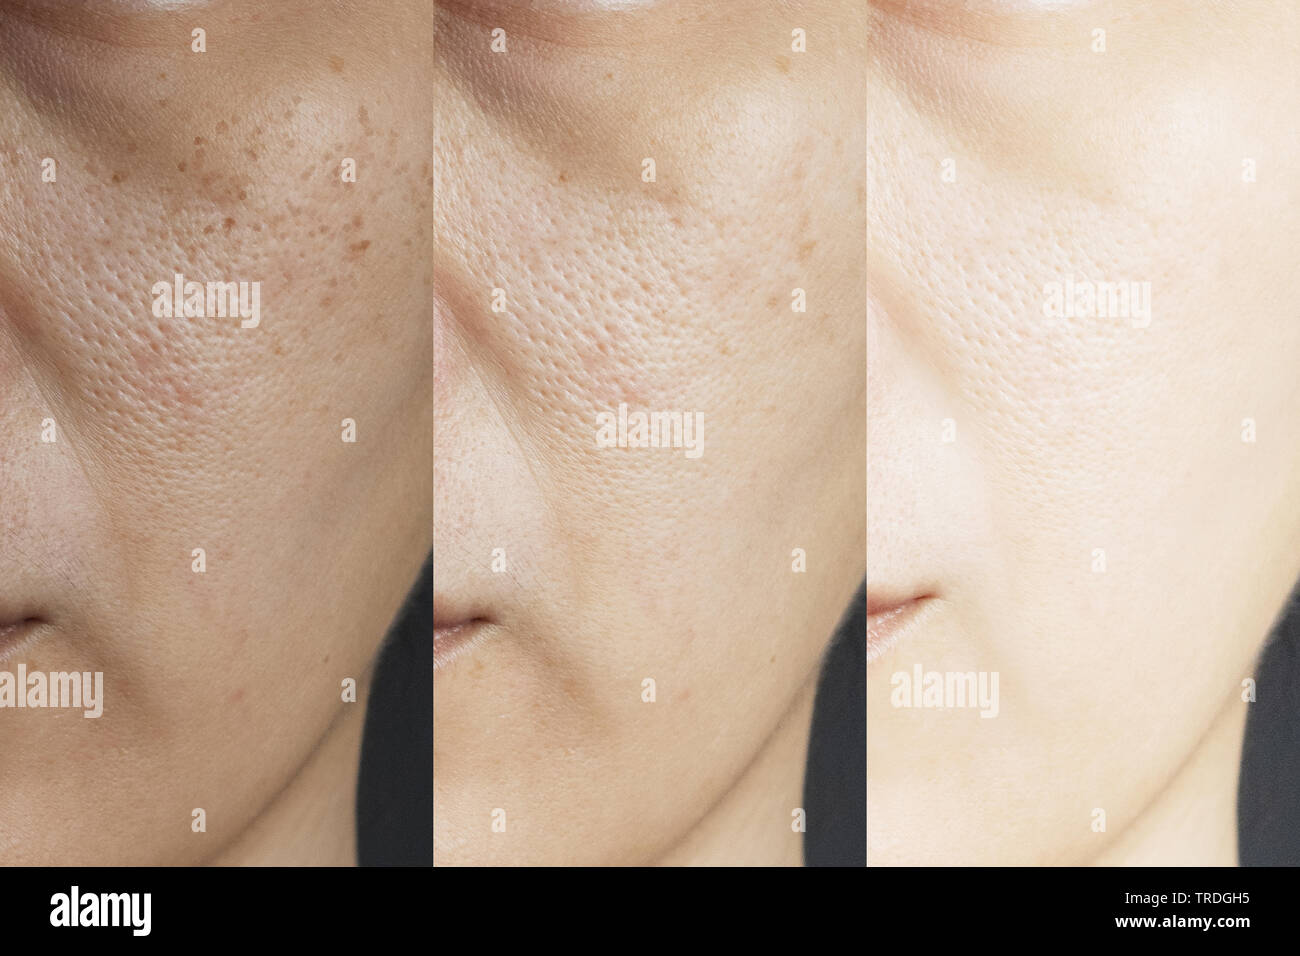 Drei Bilder im Vergleich vor und nach der Behandlung. Haut mit Sommersprossen, Pore, stumpfe Haut und Falten vor und nach der Behandlung t Stockfoto